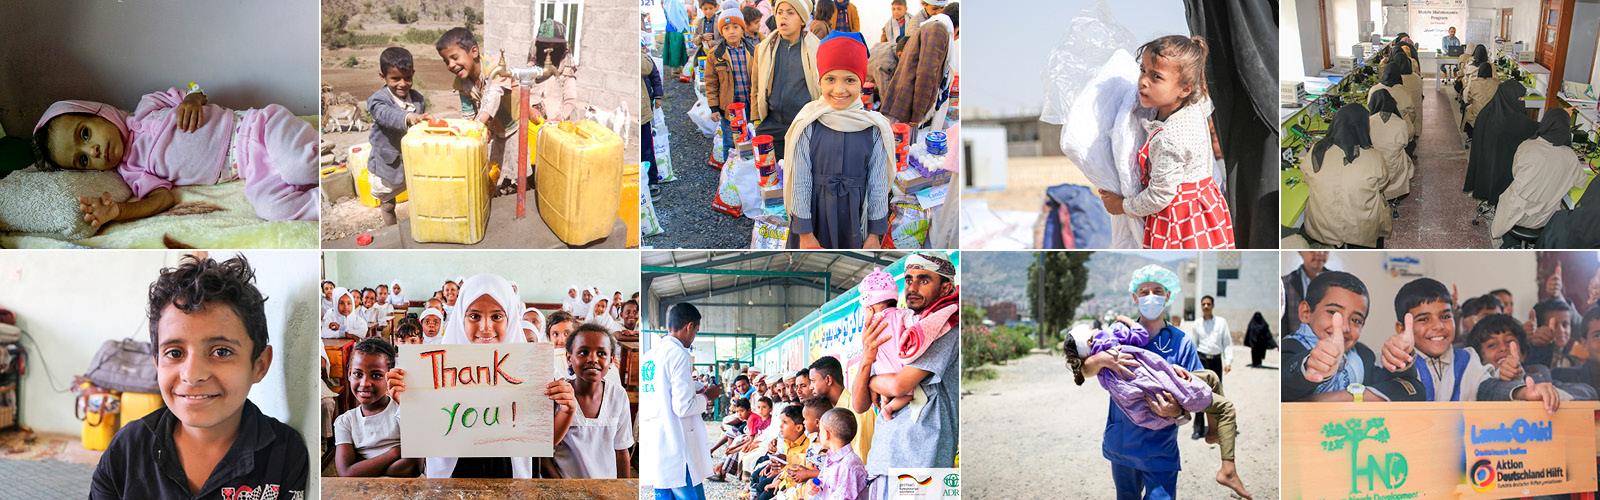 Hilfsprojekte im Jemen von Bündnisorganisationen von Aktion Deutschland Hilft